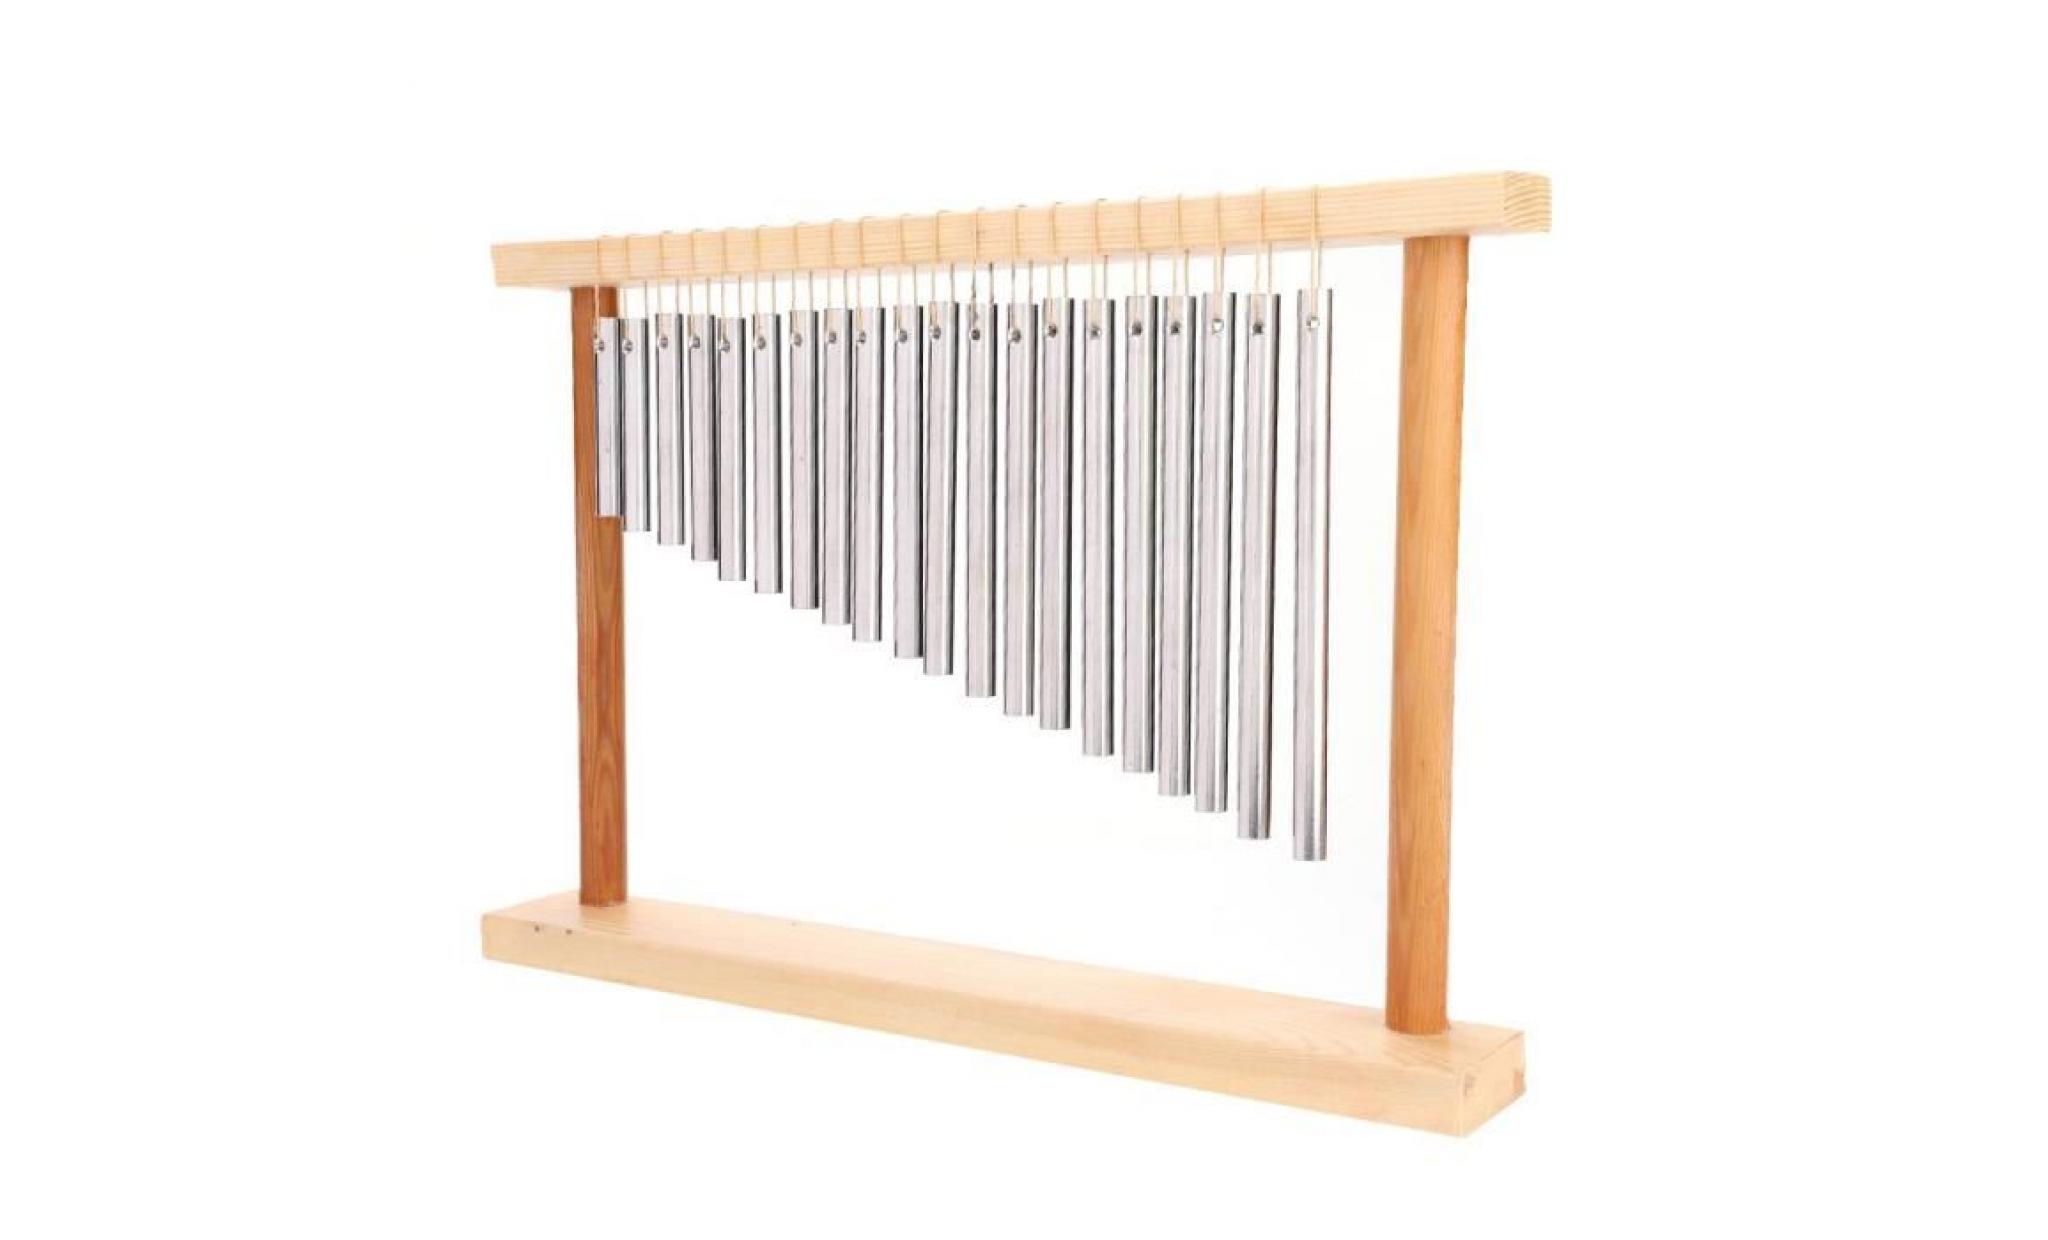 20 barres instrument de percussion musicale  carillon de vent avec 20 tuyau en aluminium solide carillons à percussion(argent)   yua pas cher